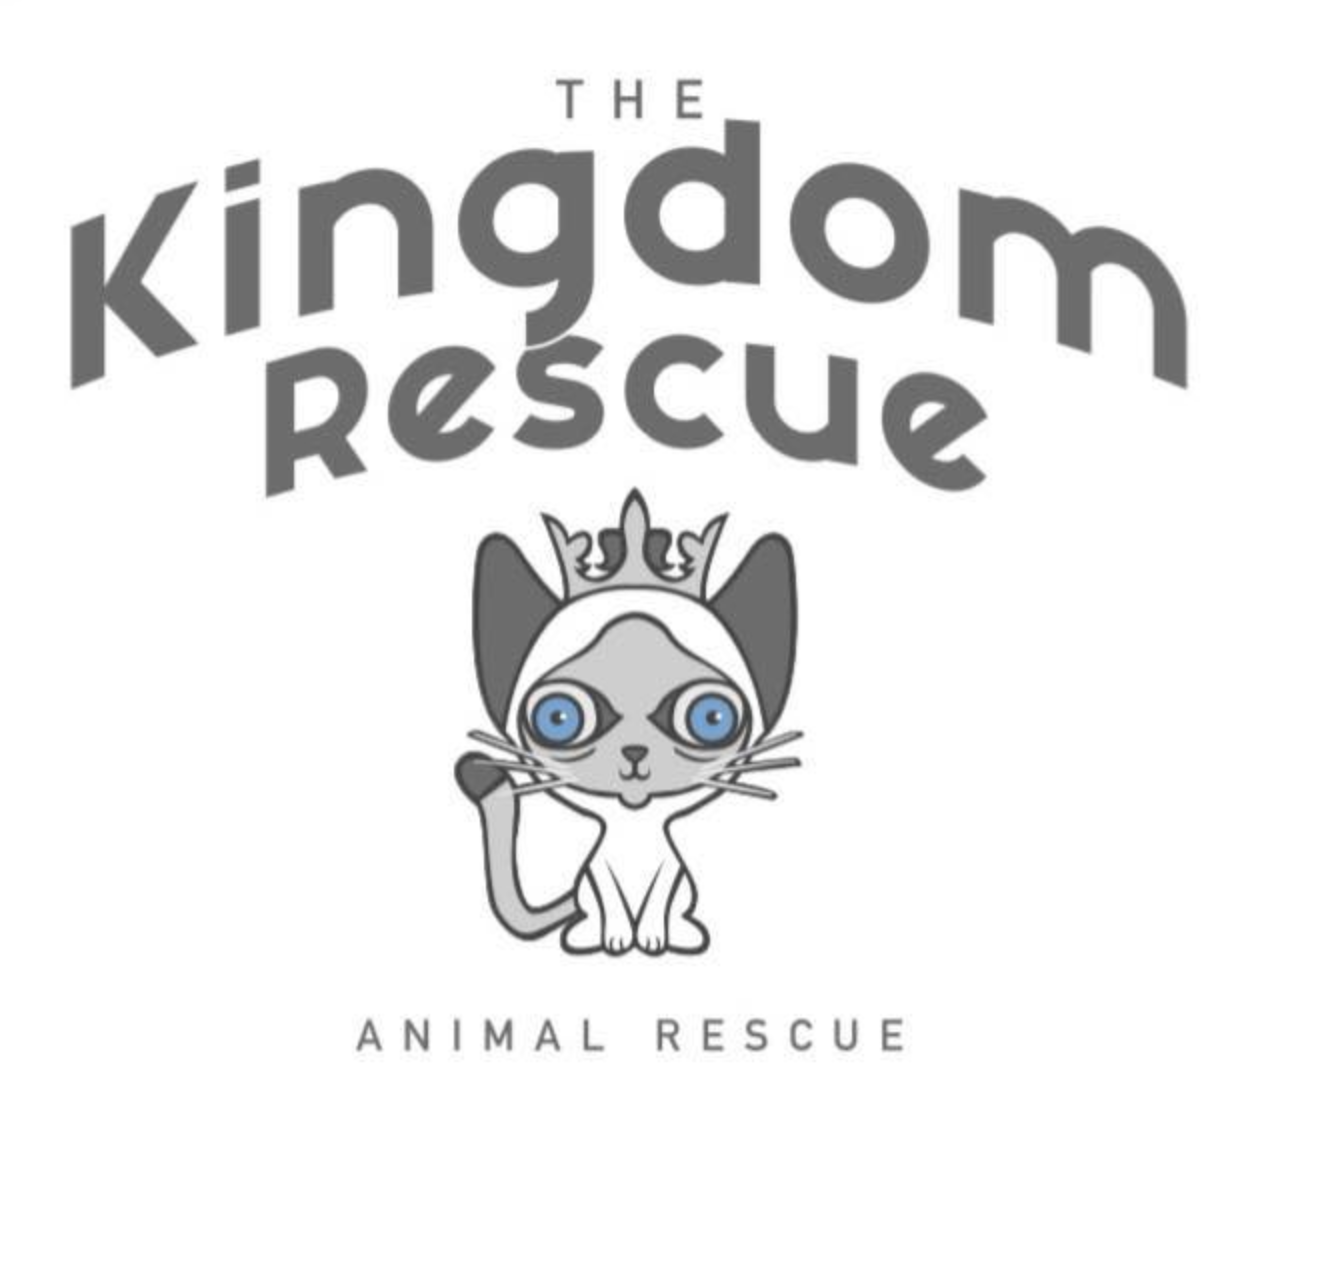 The Kingdom Rescue